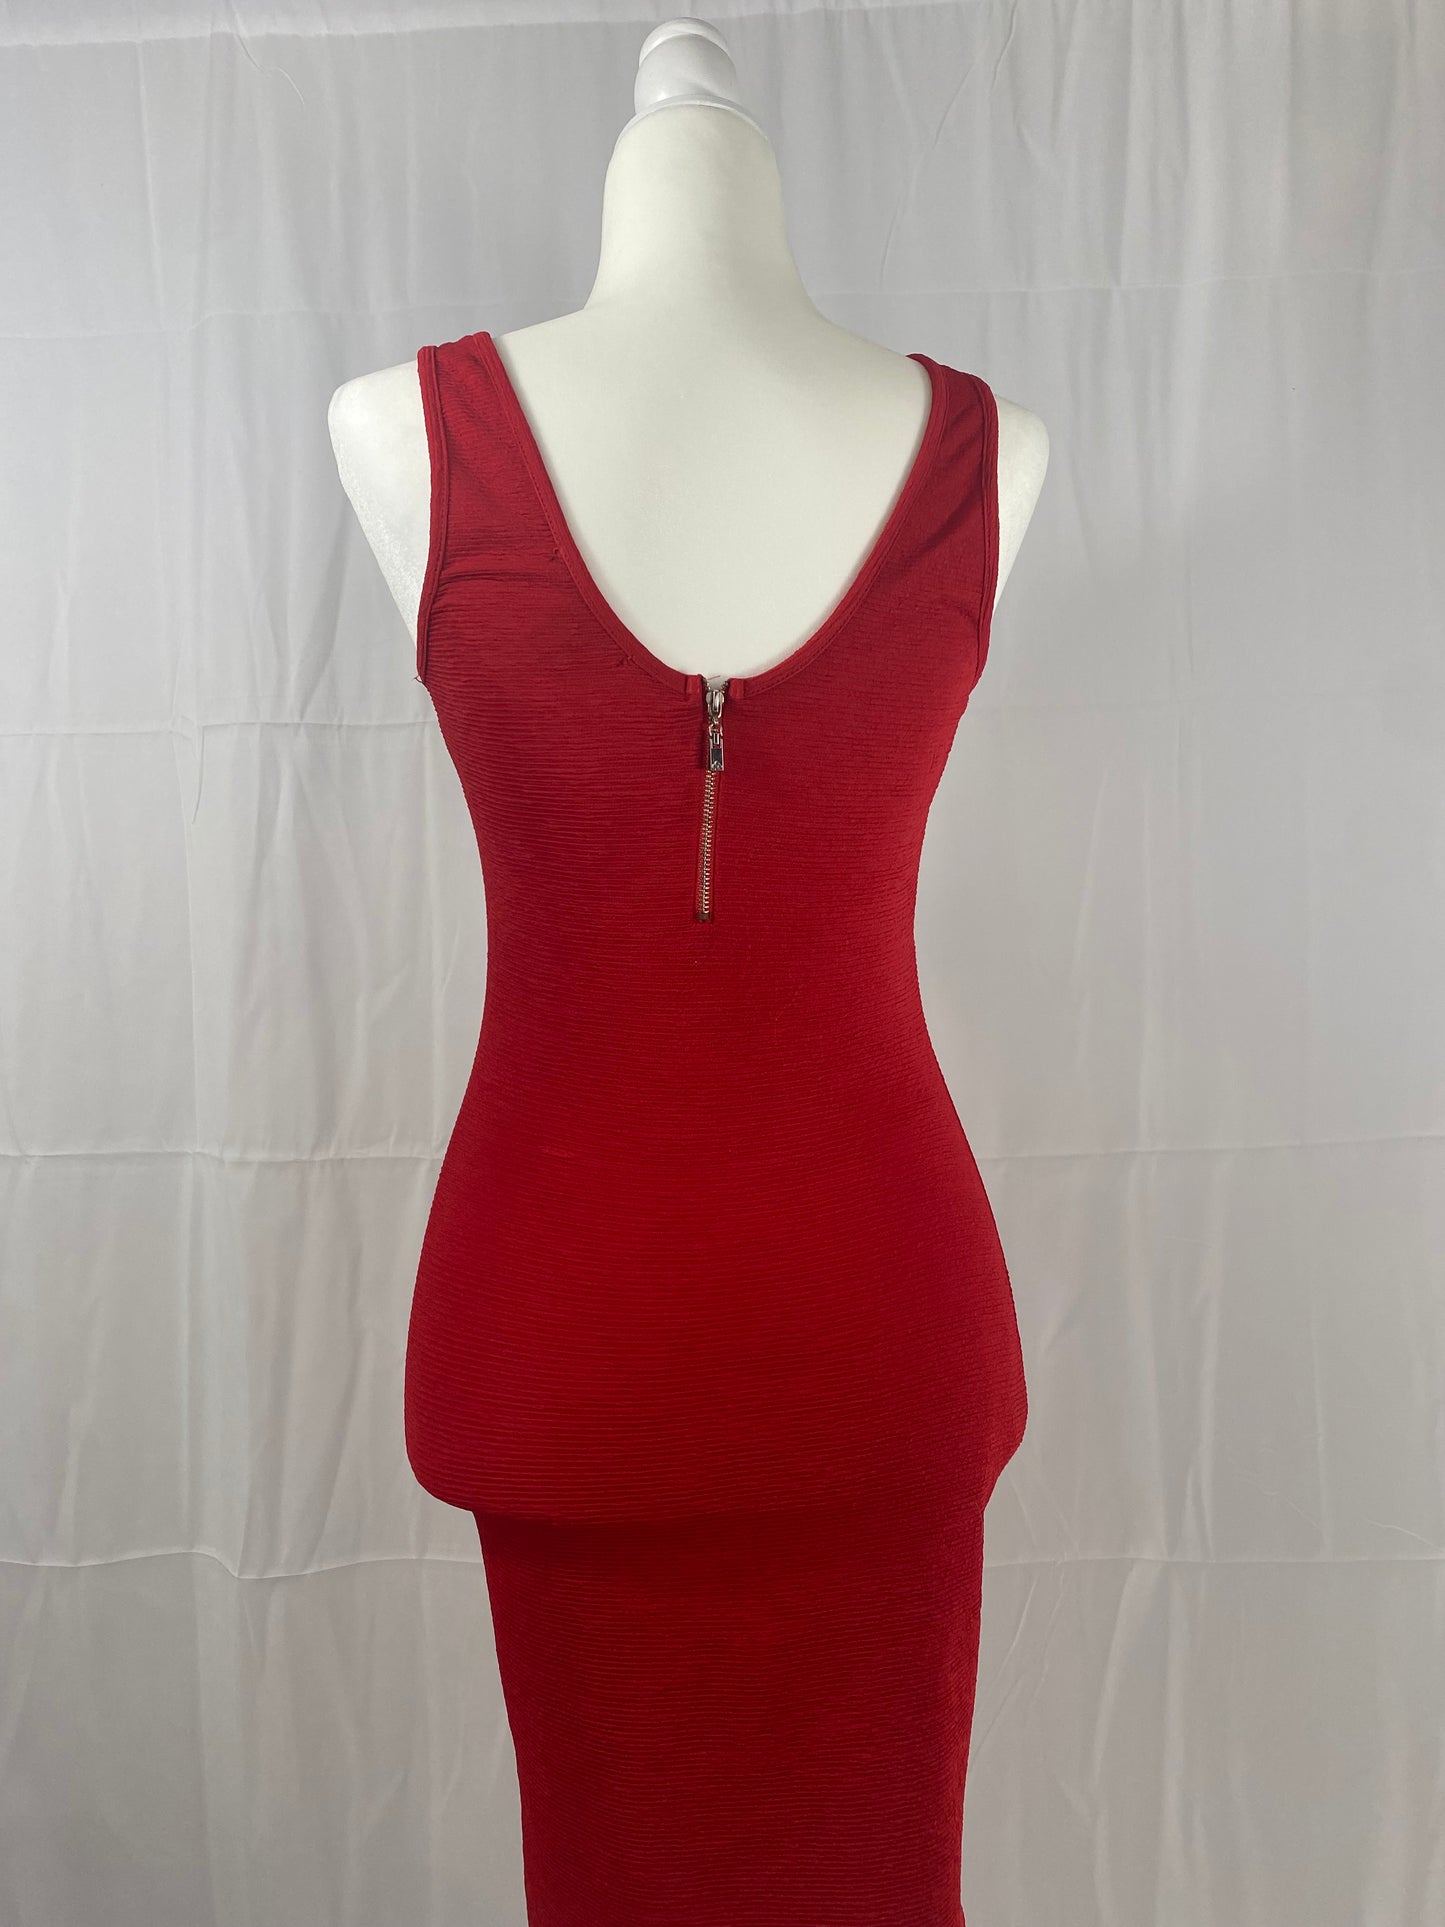 Red bodycon mini dress